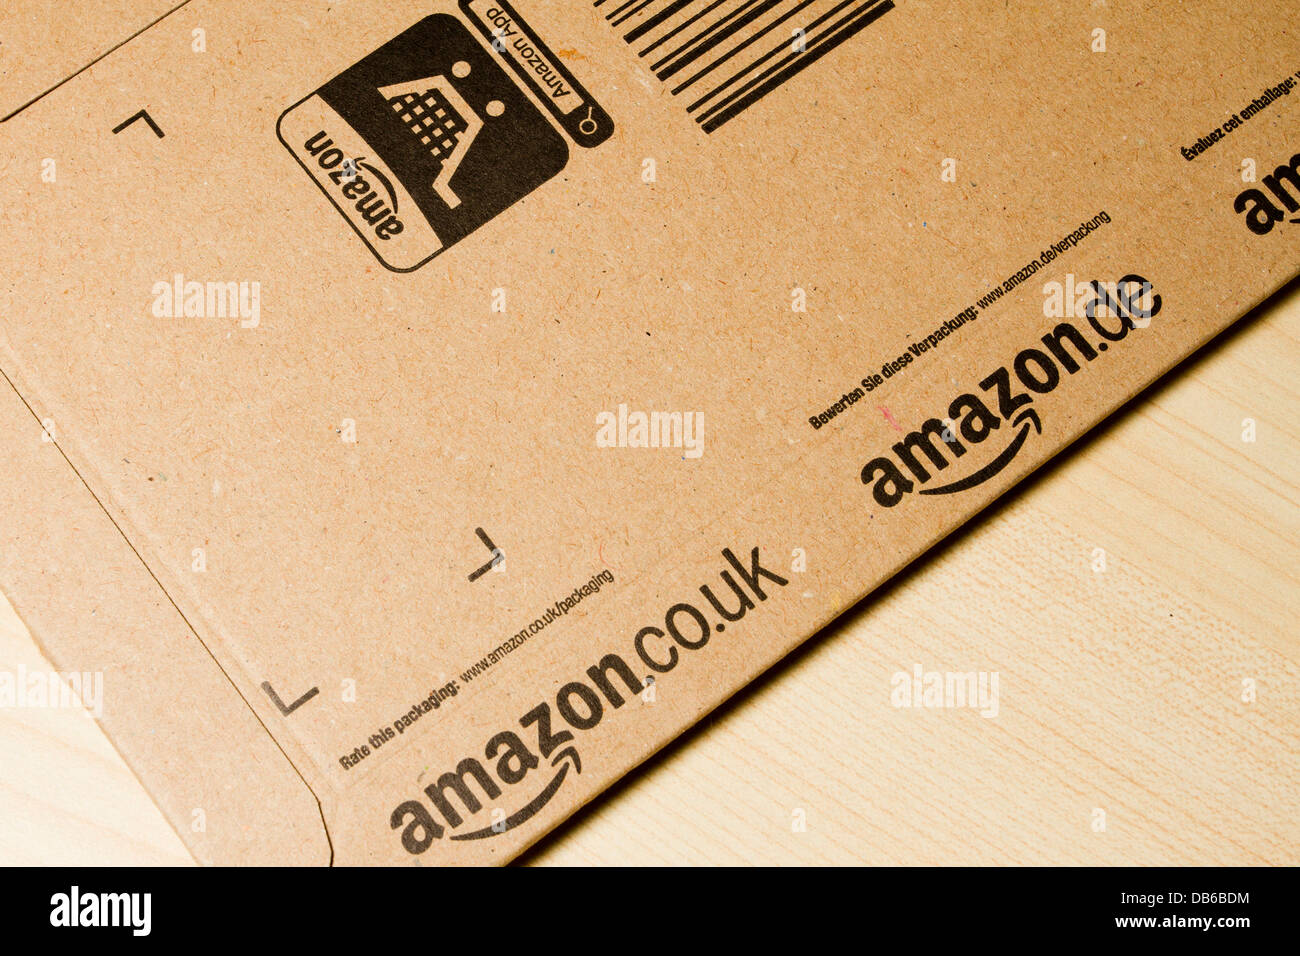 Livraison Amazon carte, enveloppe, England, UK Banque D'Images